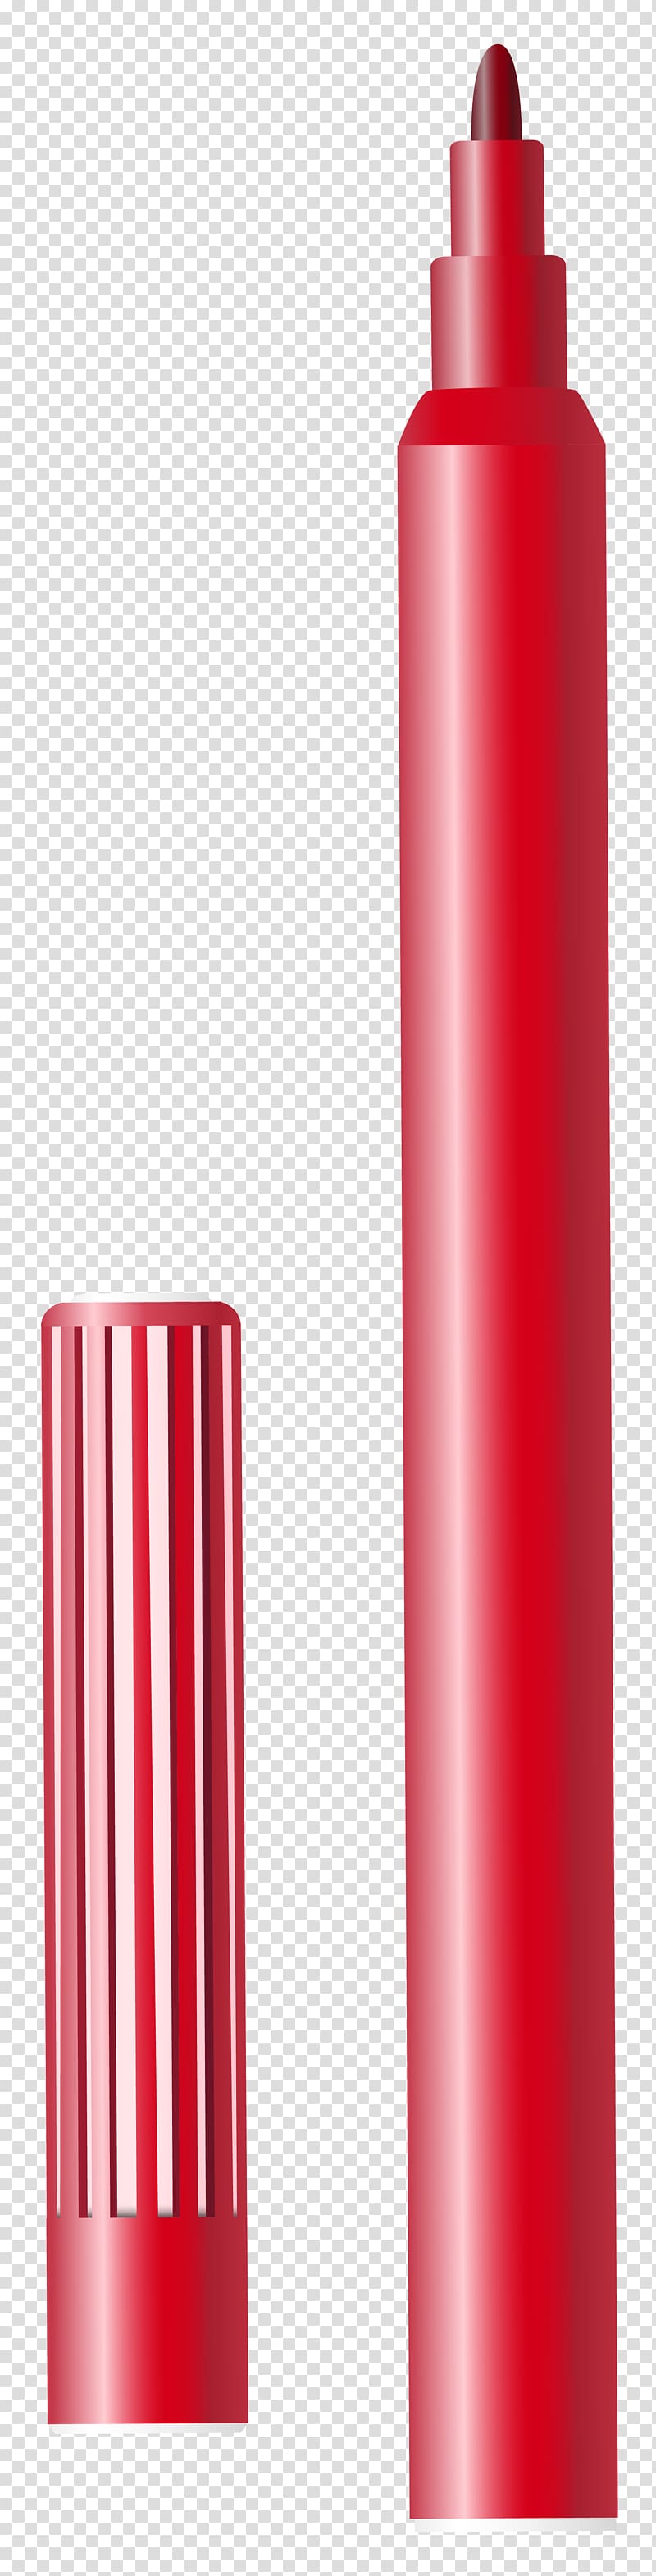 red coloring pen illustration, Marker pen Pencil , Red Felt Tip Pen transparent background PNG clipart